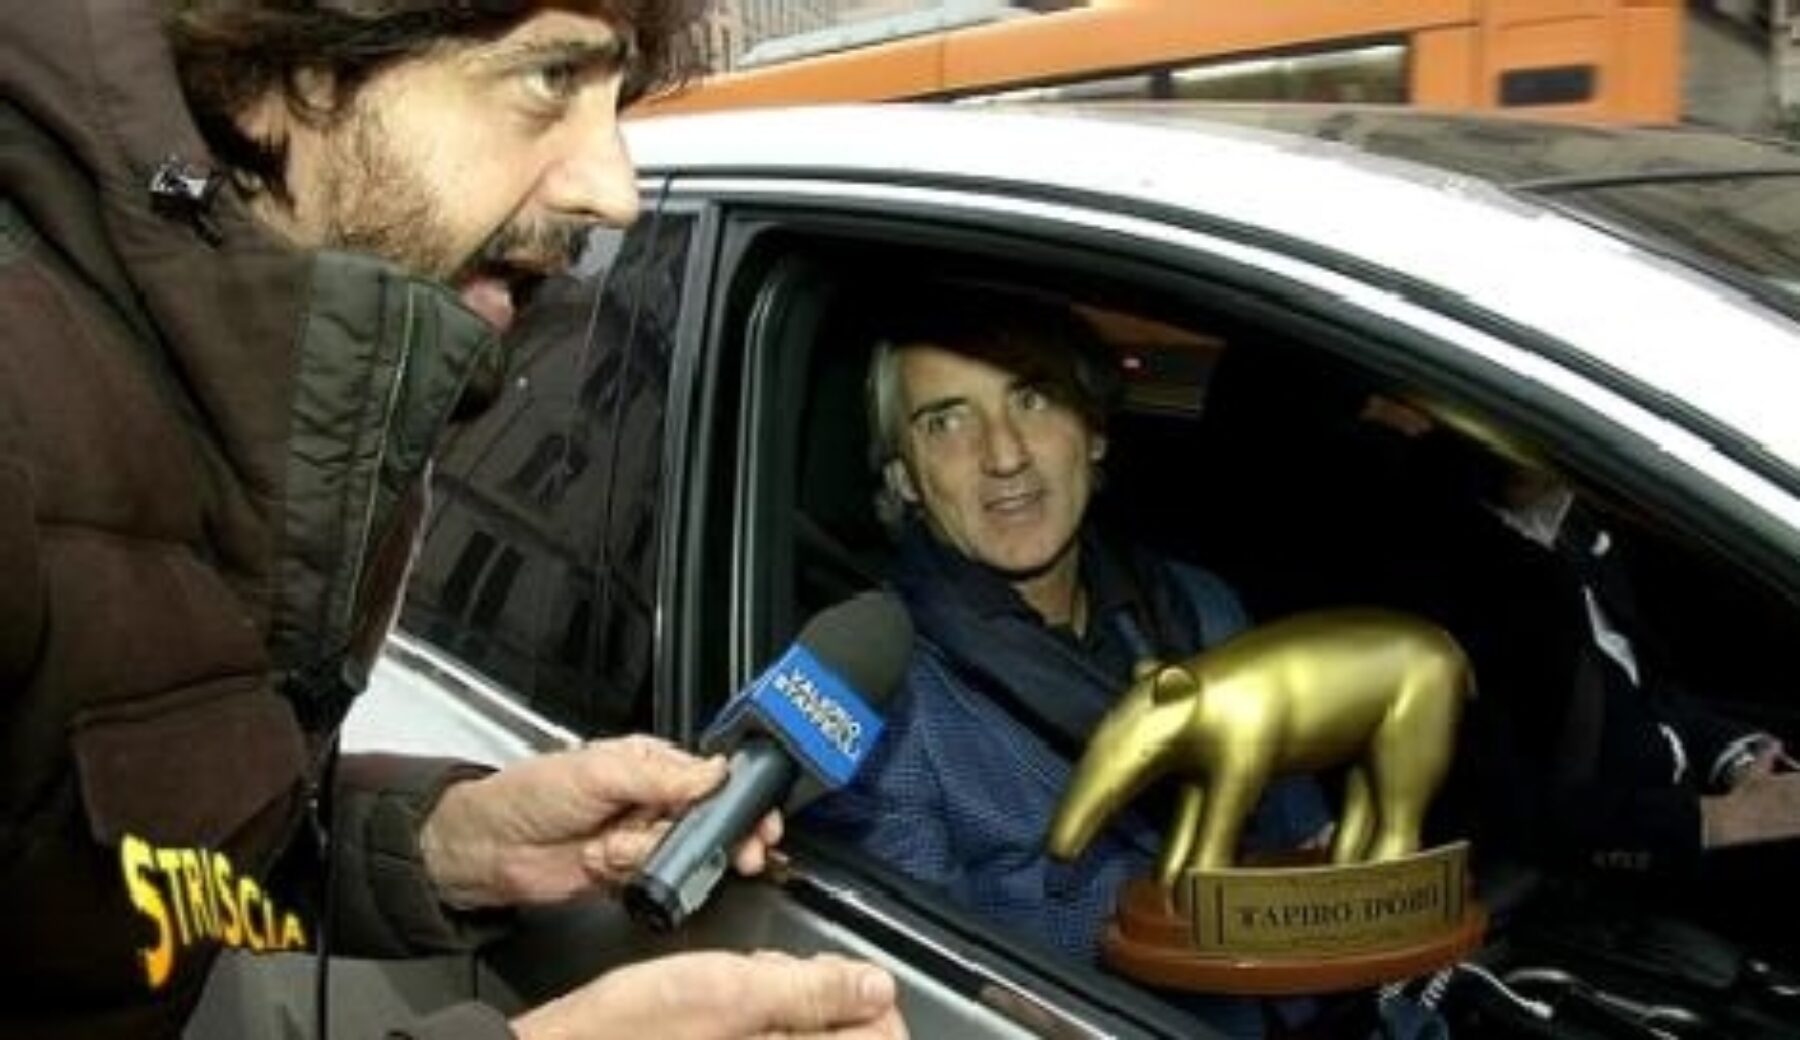 A Striscia la notizia Tapiro d’oro a Roberto Mancini per la sconfitta nel derby e il dito medio ai tifosi del Milan «in Inghilterra non avrei fatto il gesto»